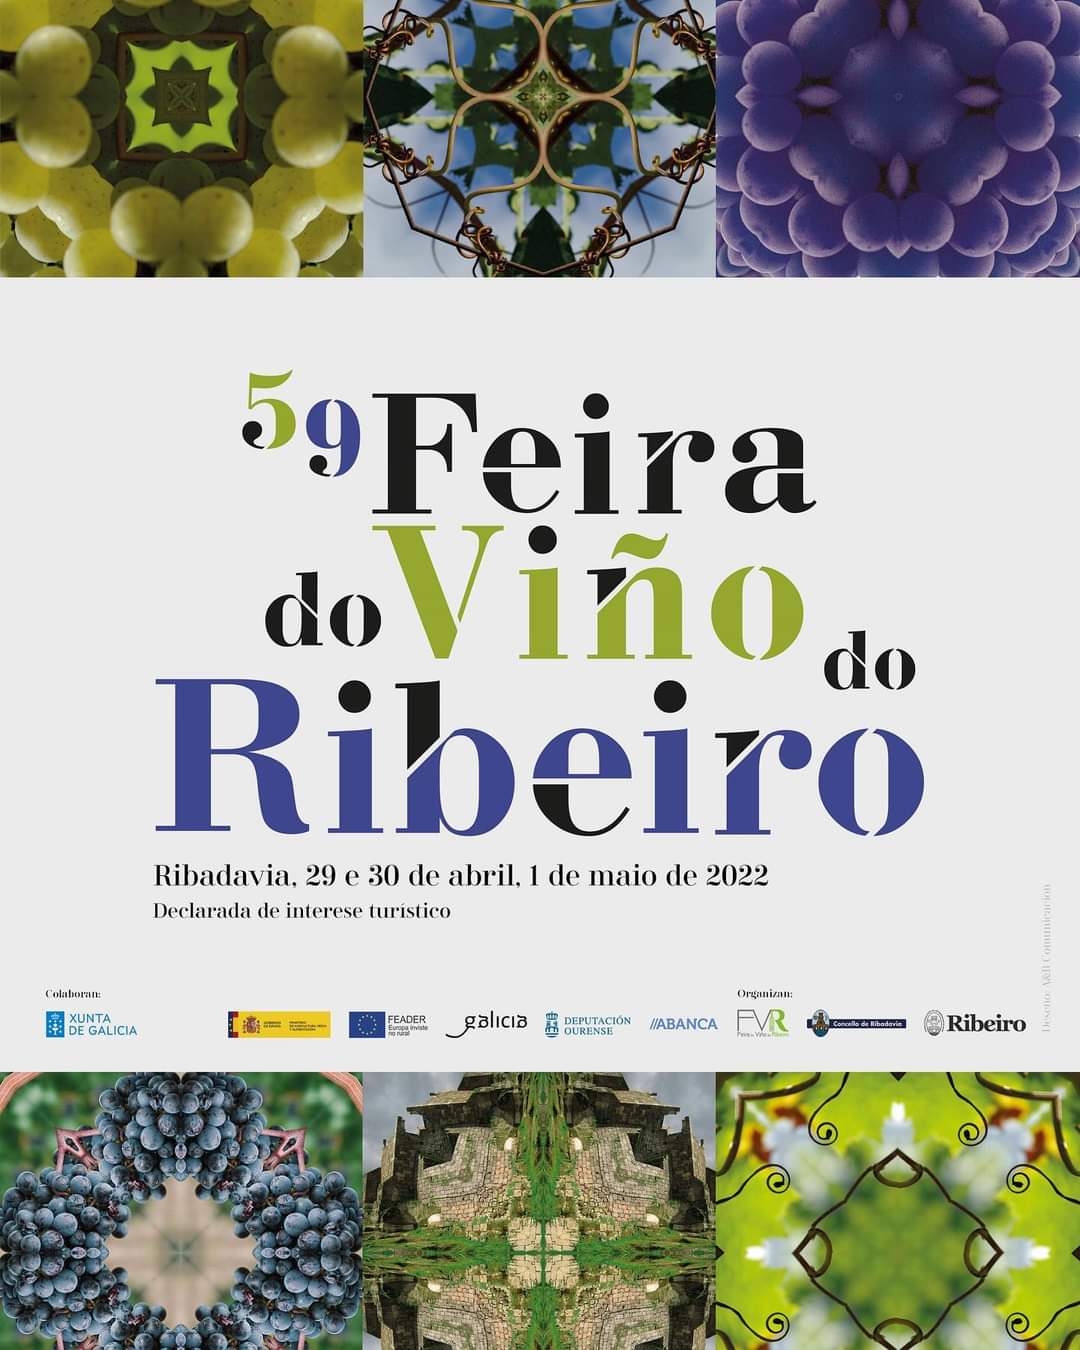 Feira do viño Ribeiro